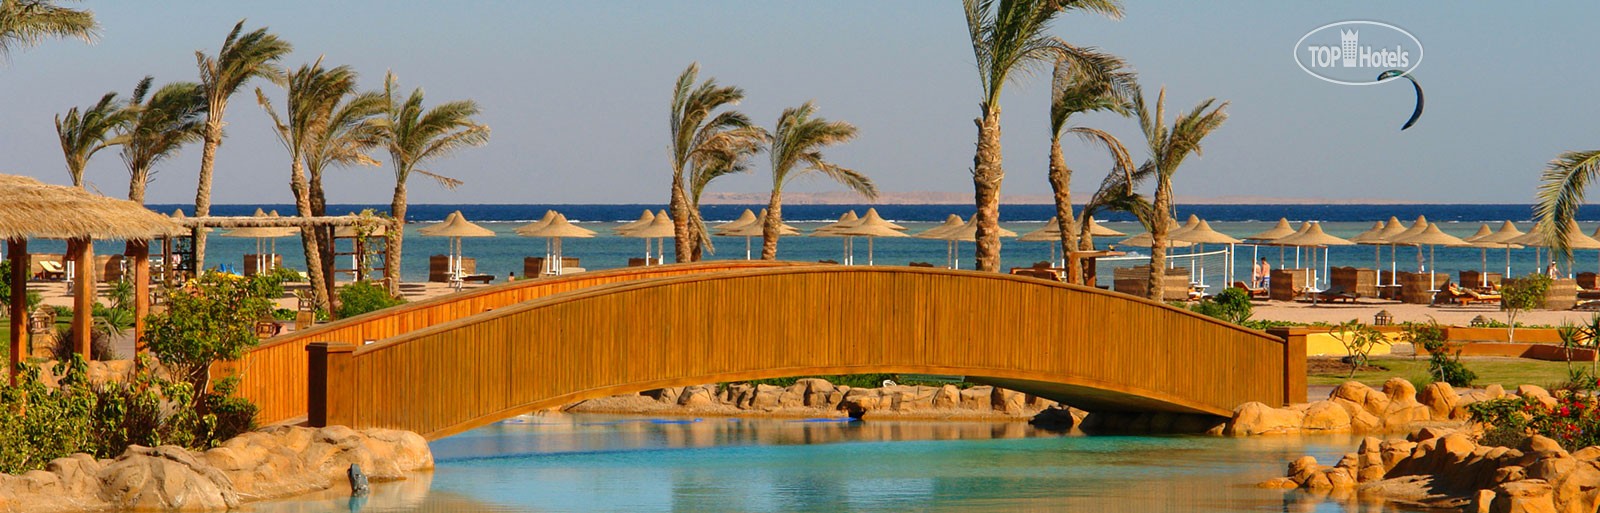 Tours to the hotel Royal Regency Club Sharm El Sheikh